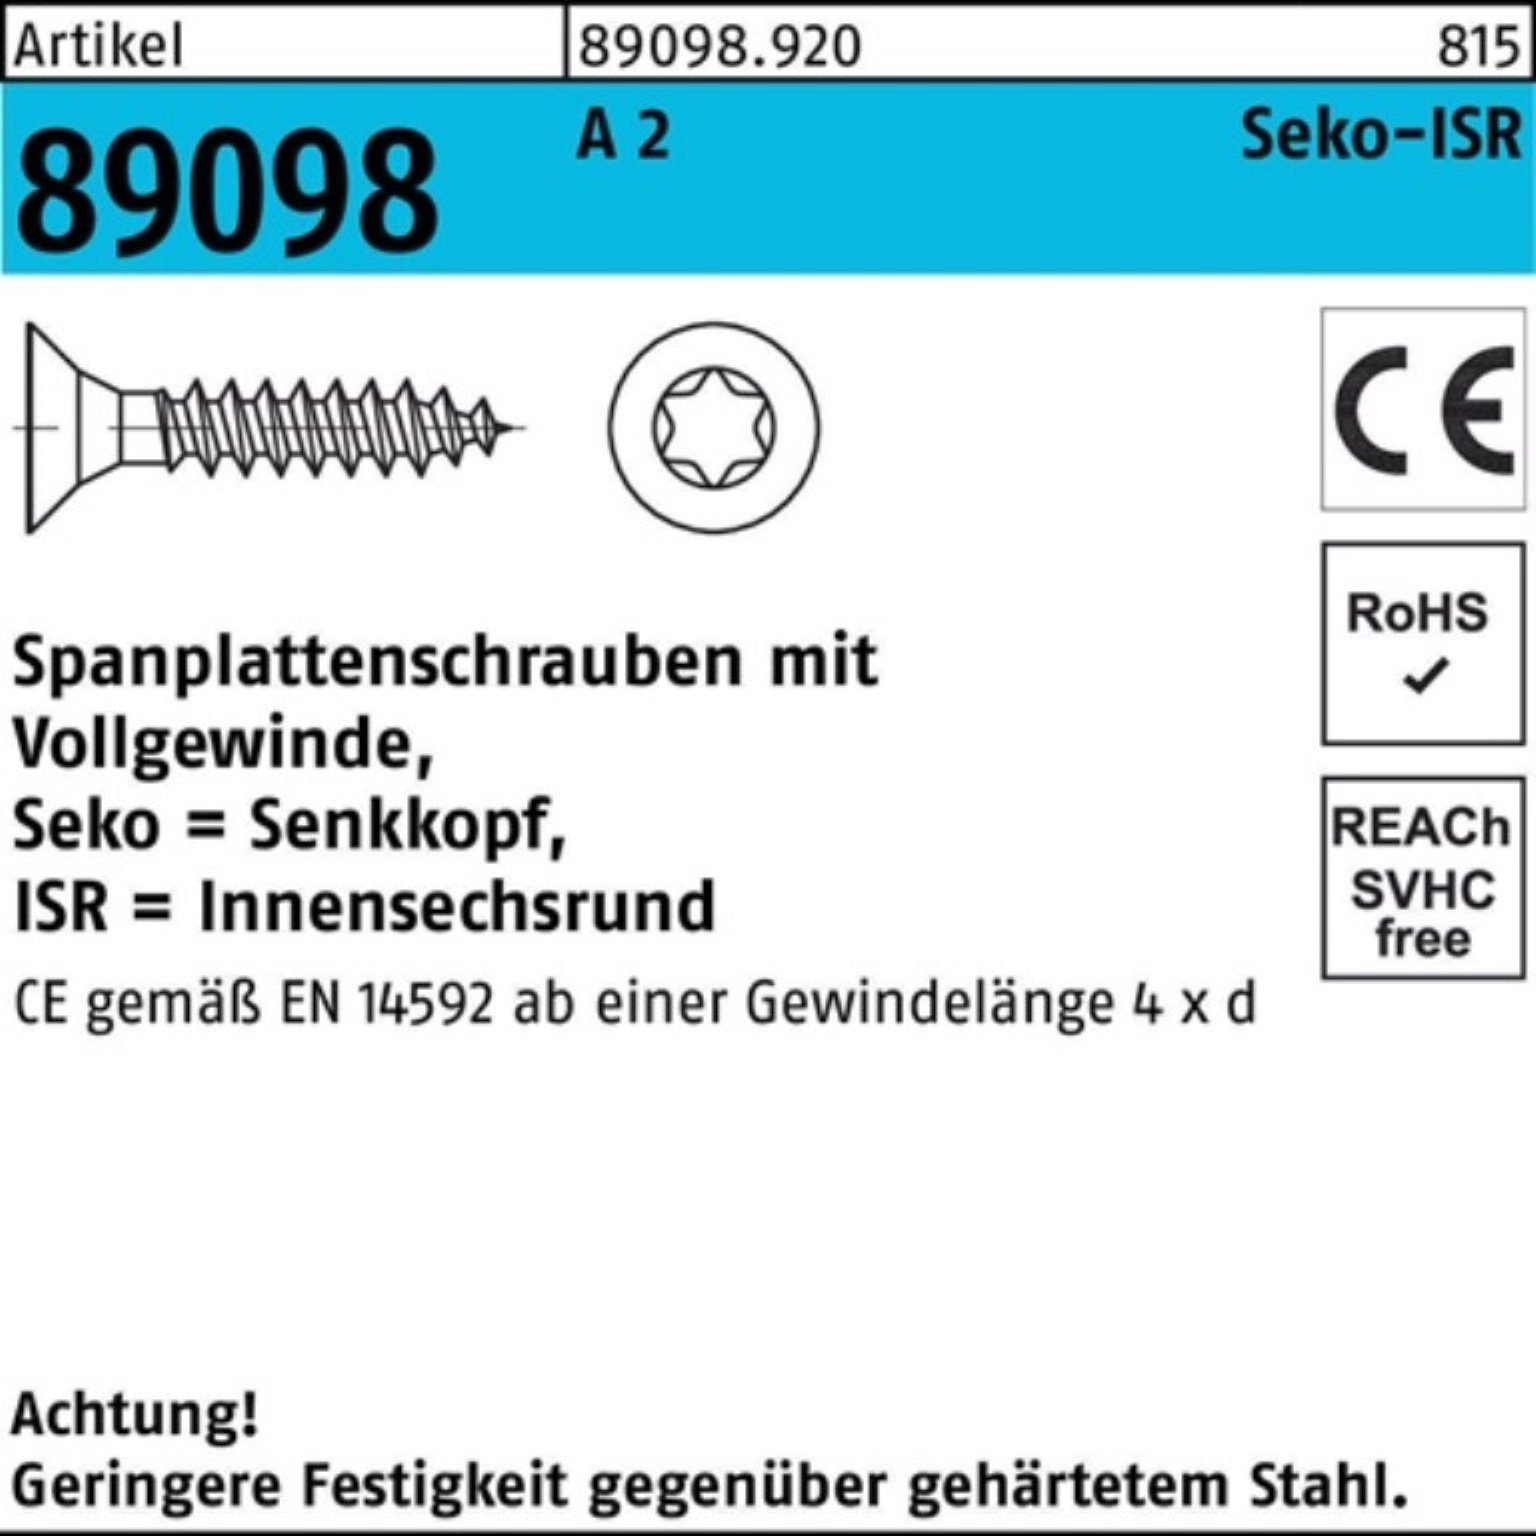 Reyher Spanplattenschraube 1000er Pack Spanplattenschraube R 89098 SEKO ISR VG 3x 25-T10 A 2 1000